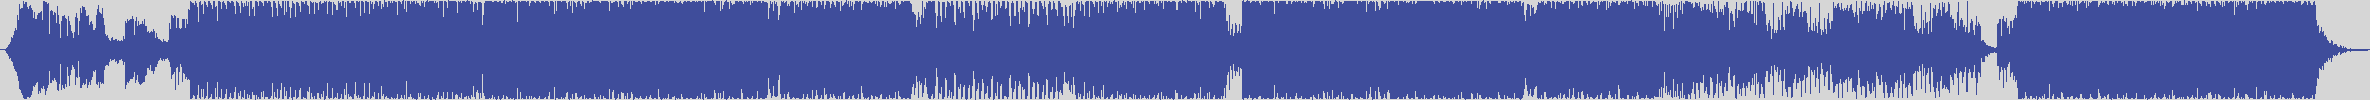 definitiva [DEF011] De - Javu - Never [Piparo's Bluett Cut] audio wave form